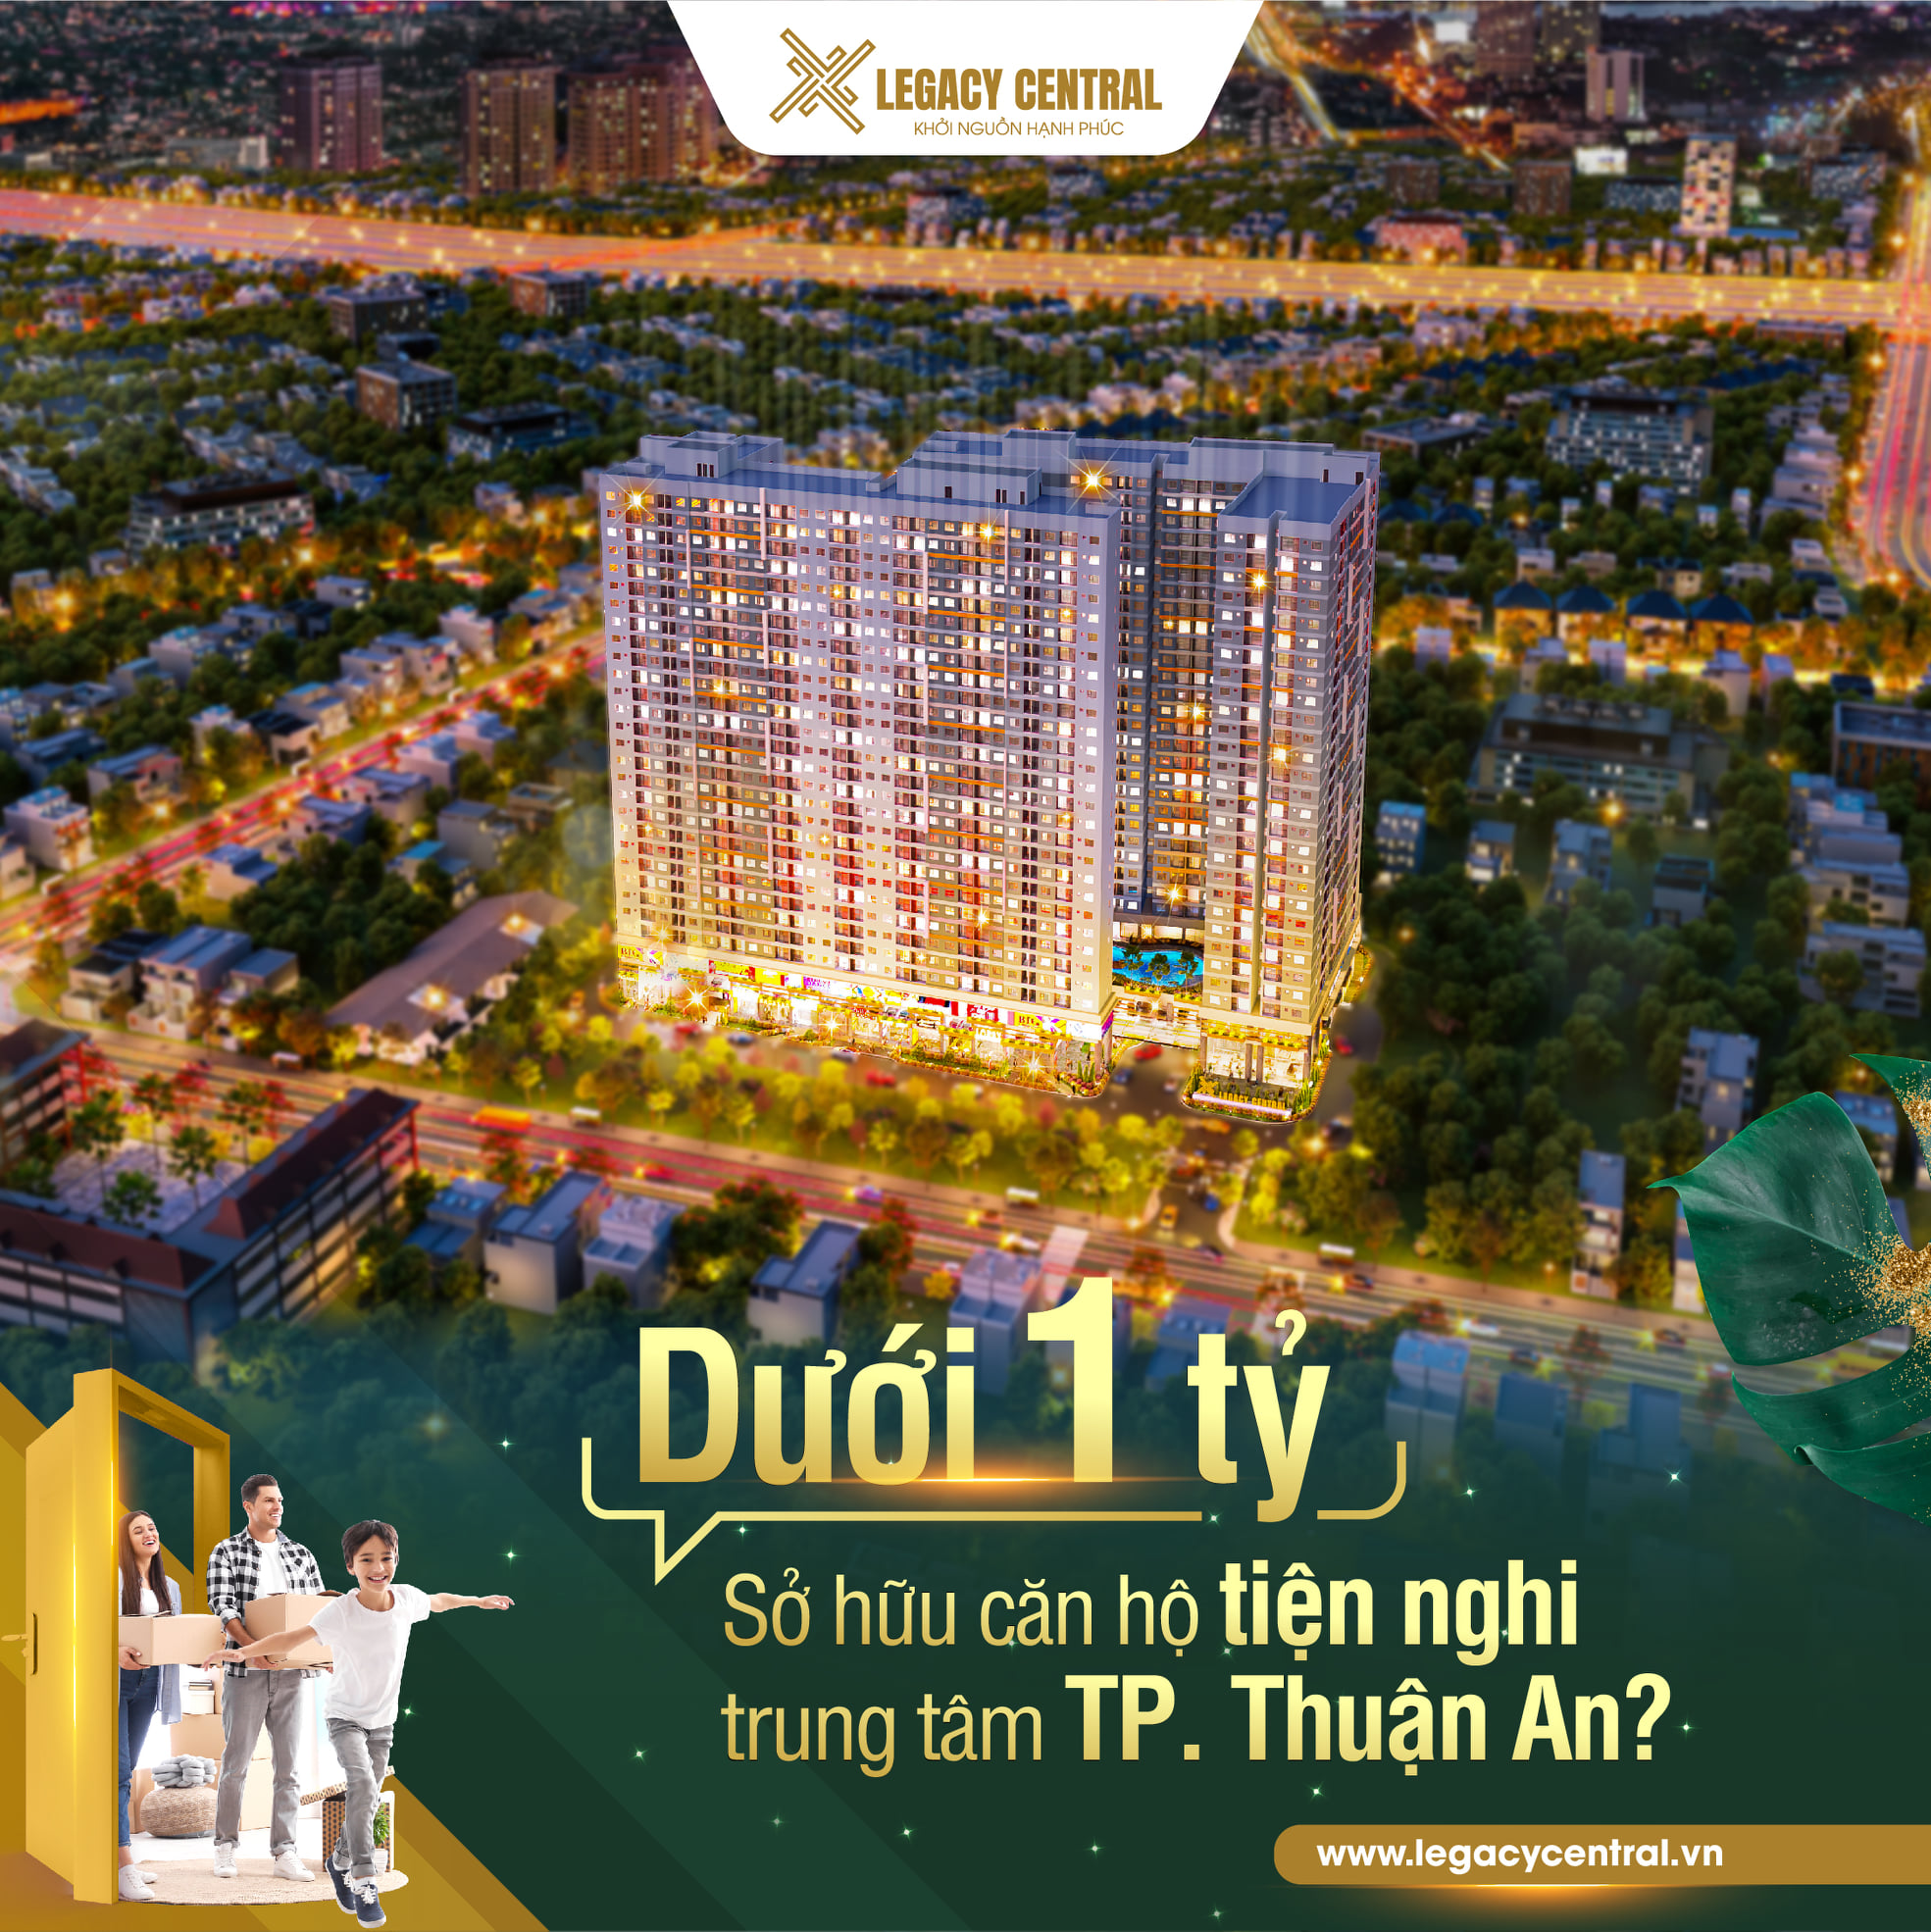 Chỉ từ 160tr sở hữu ngay căn hộ hiện đại nằm ngay tại trung tâm TP Thuận An Bình Dương